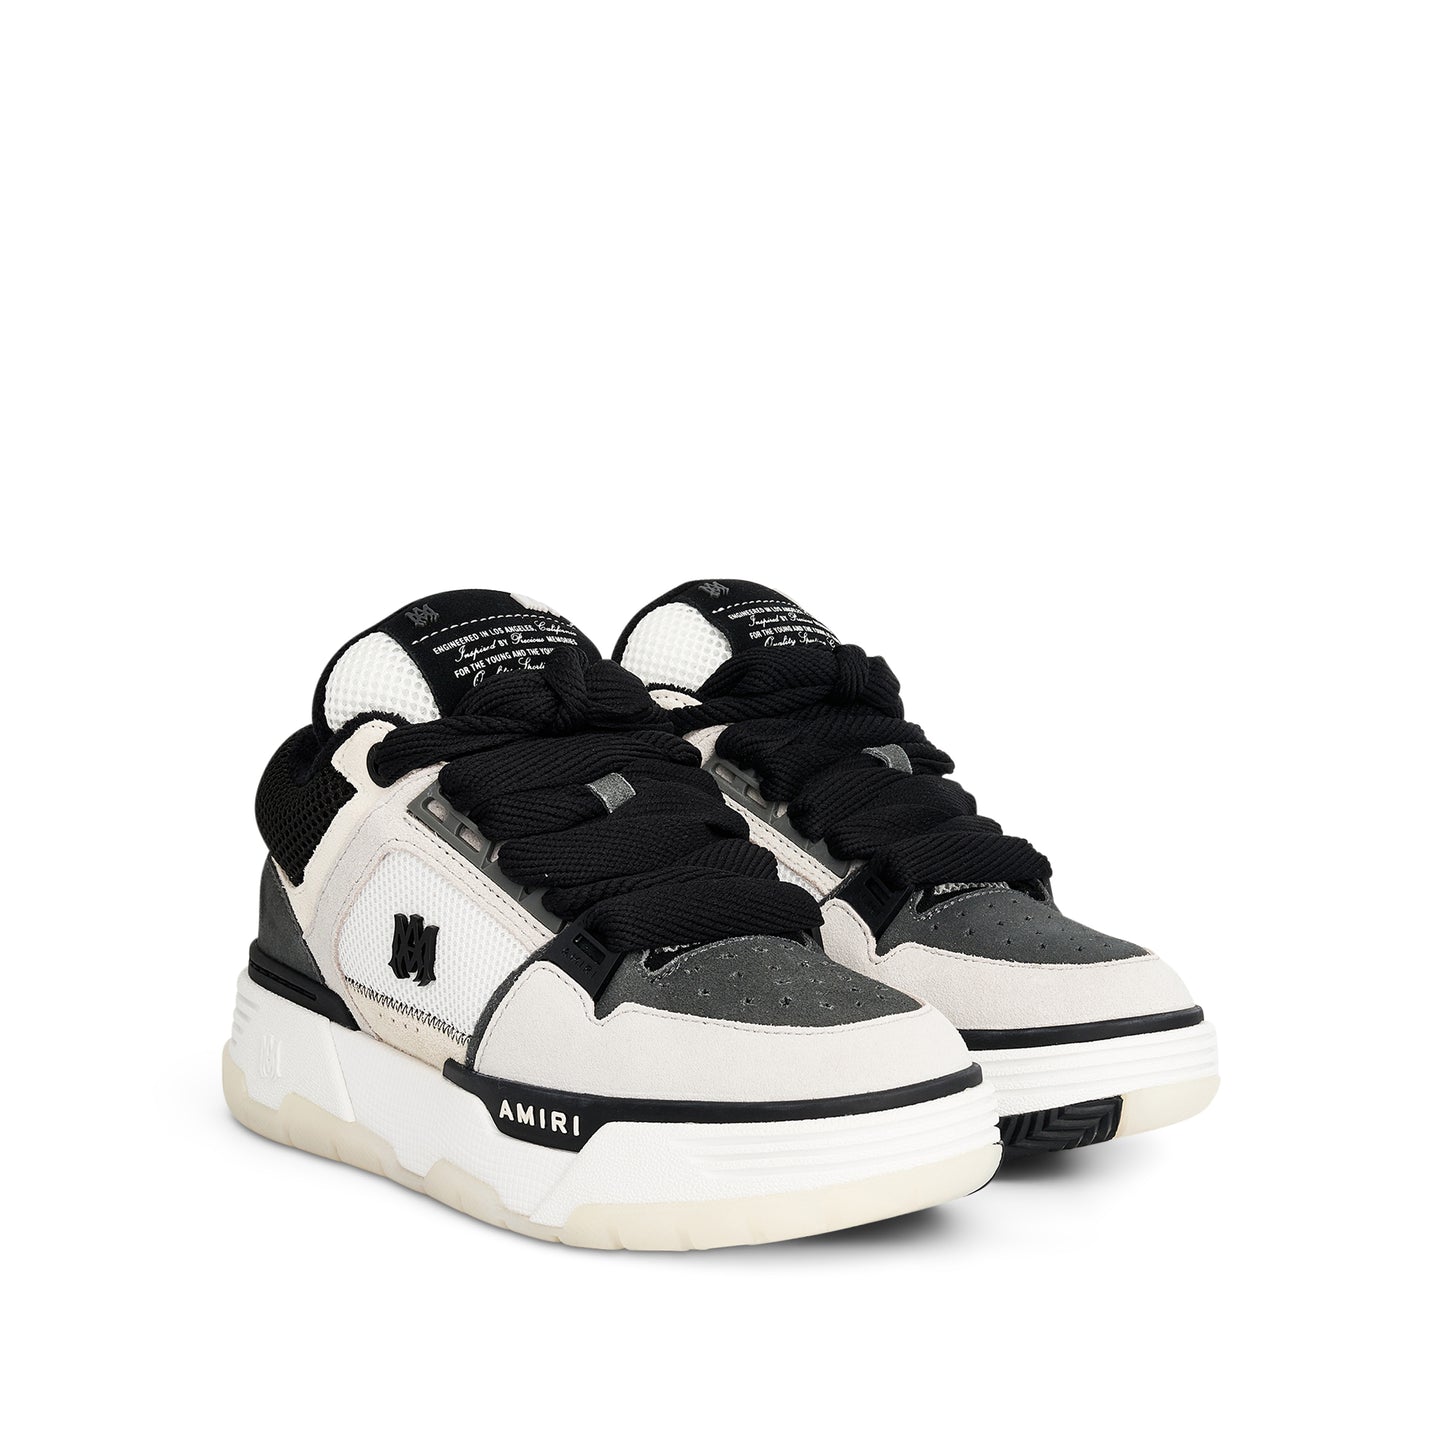 MA-1 Sneaker in Black/Alabaster